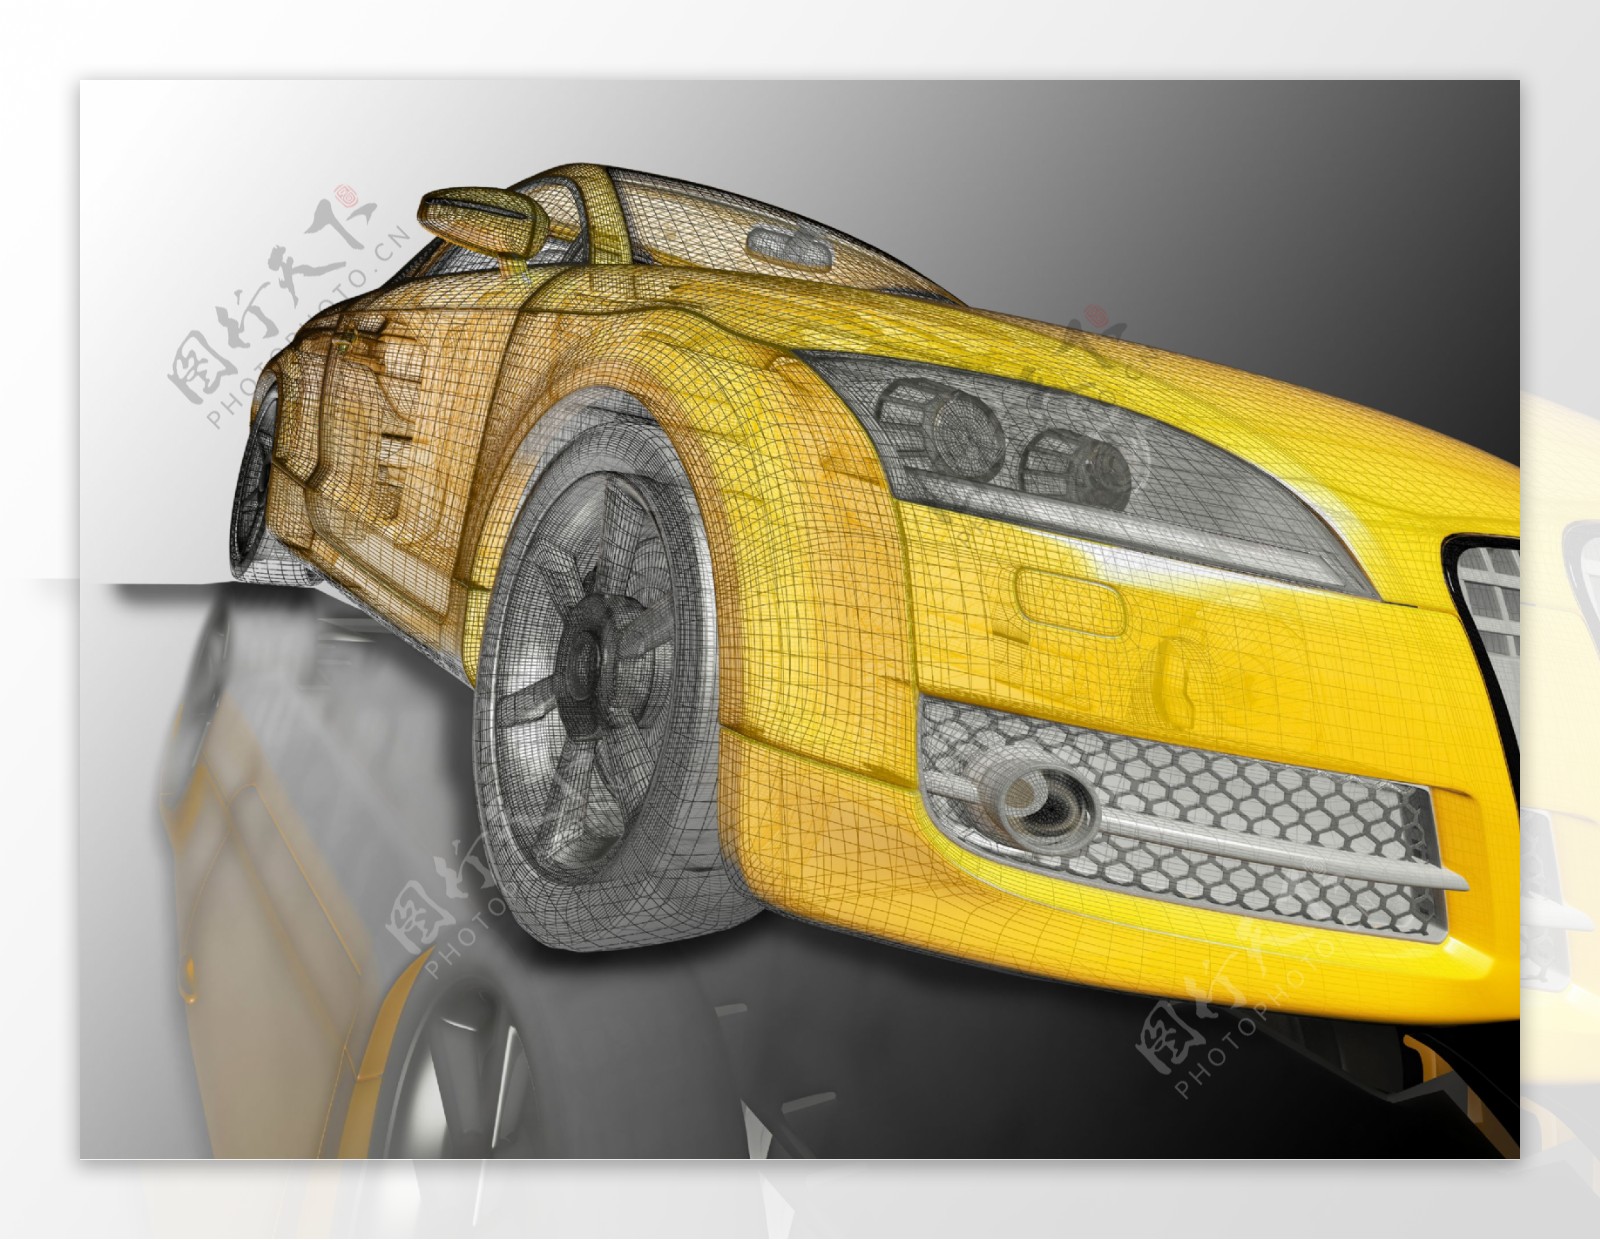 黄色汽车模型图片